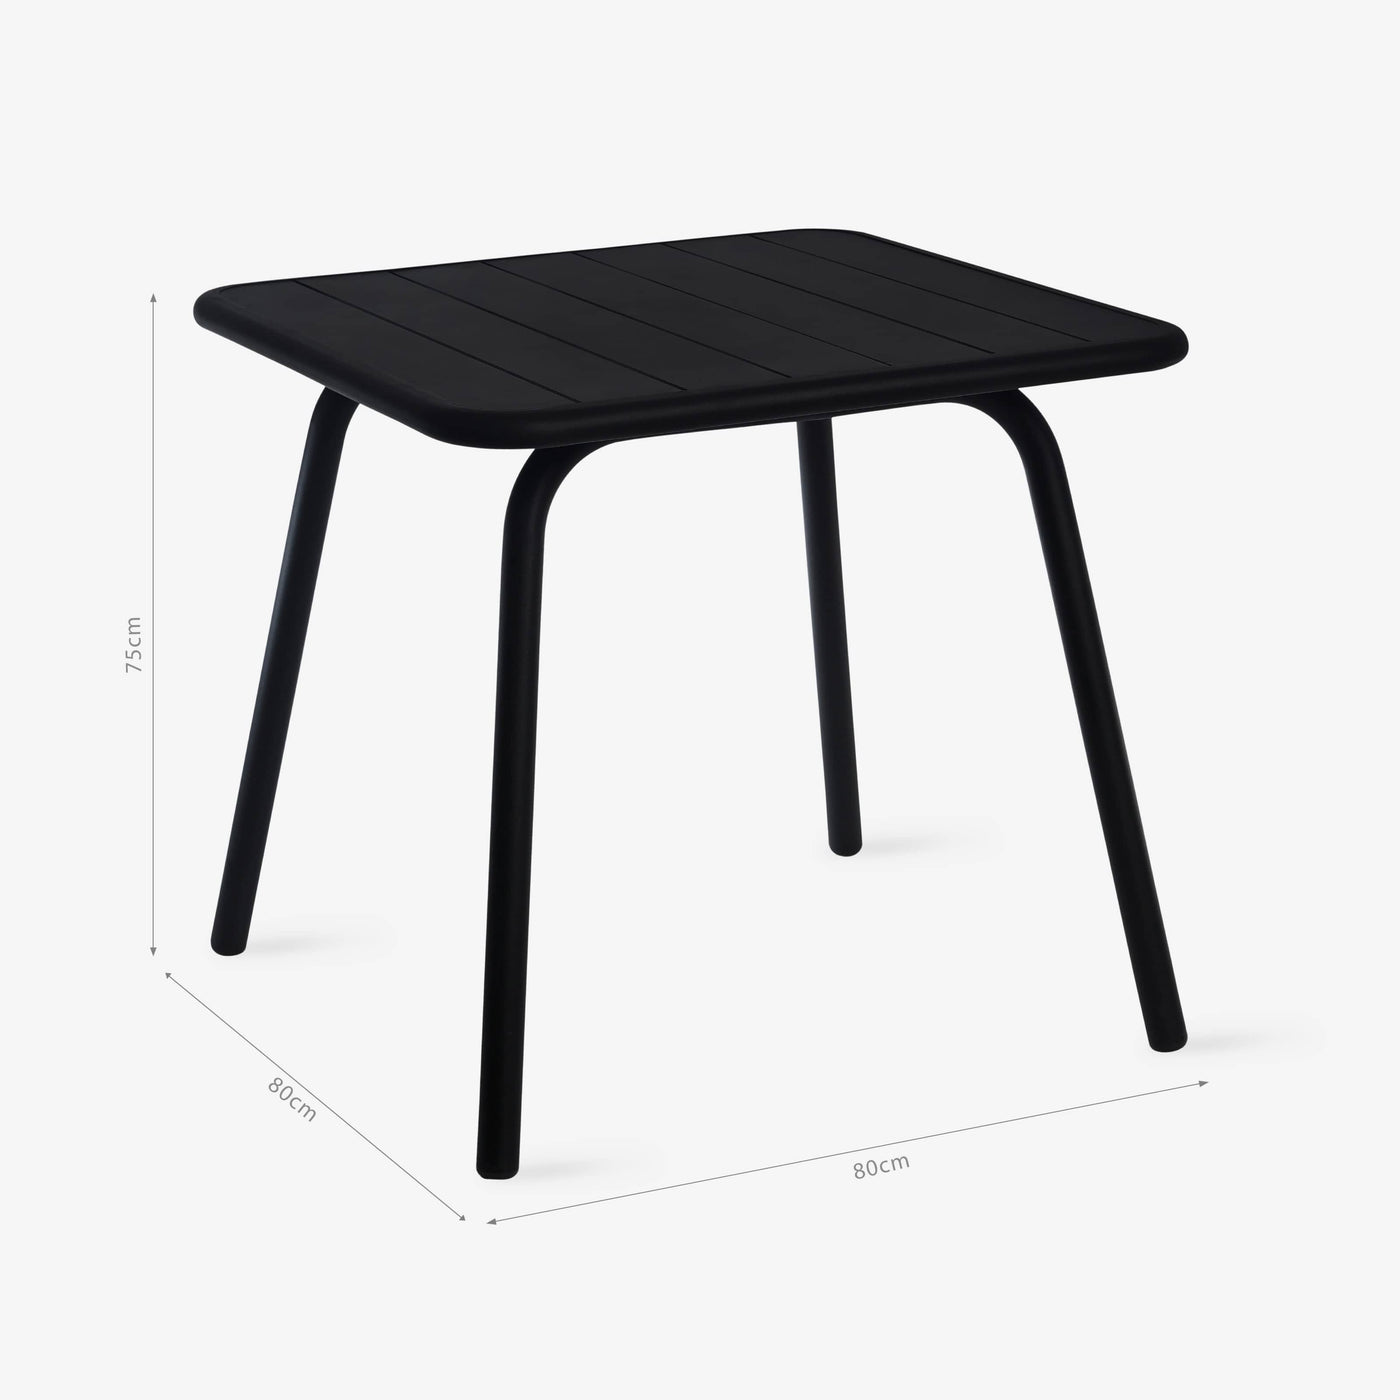 Rosta 4-Seater Garden Table, Black - 2